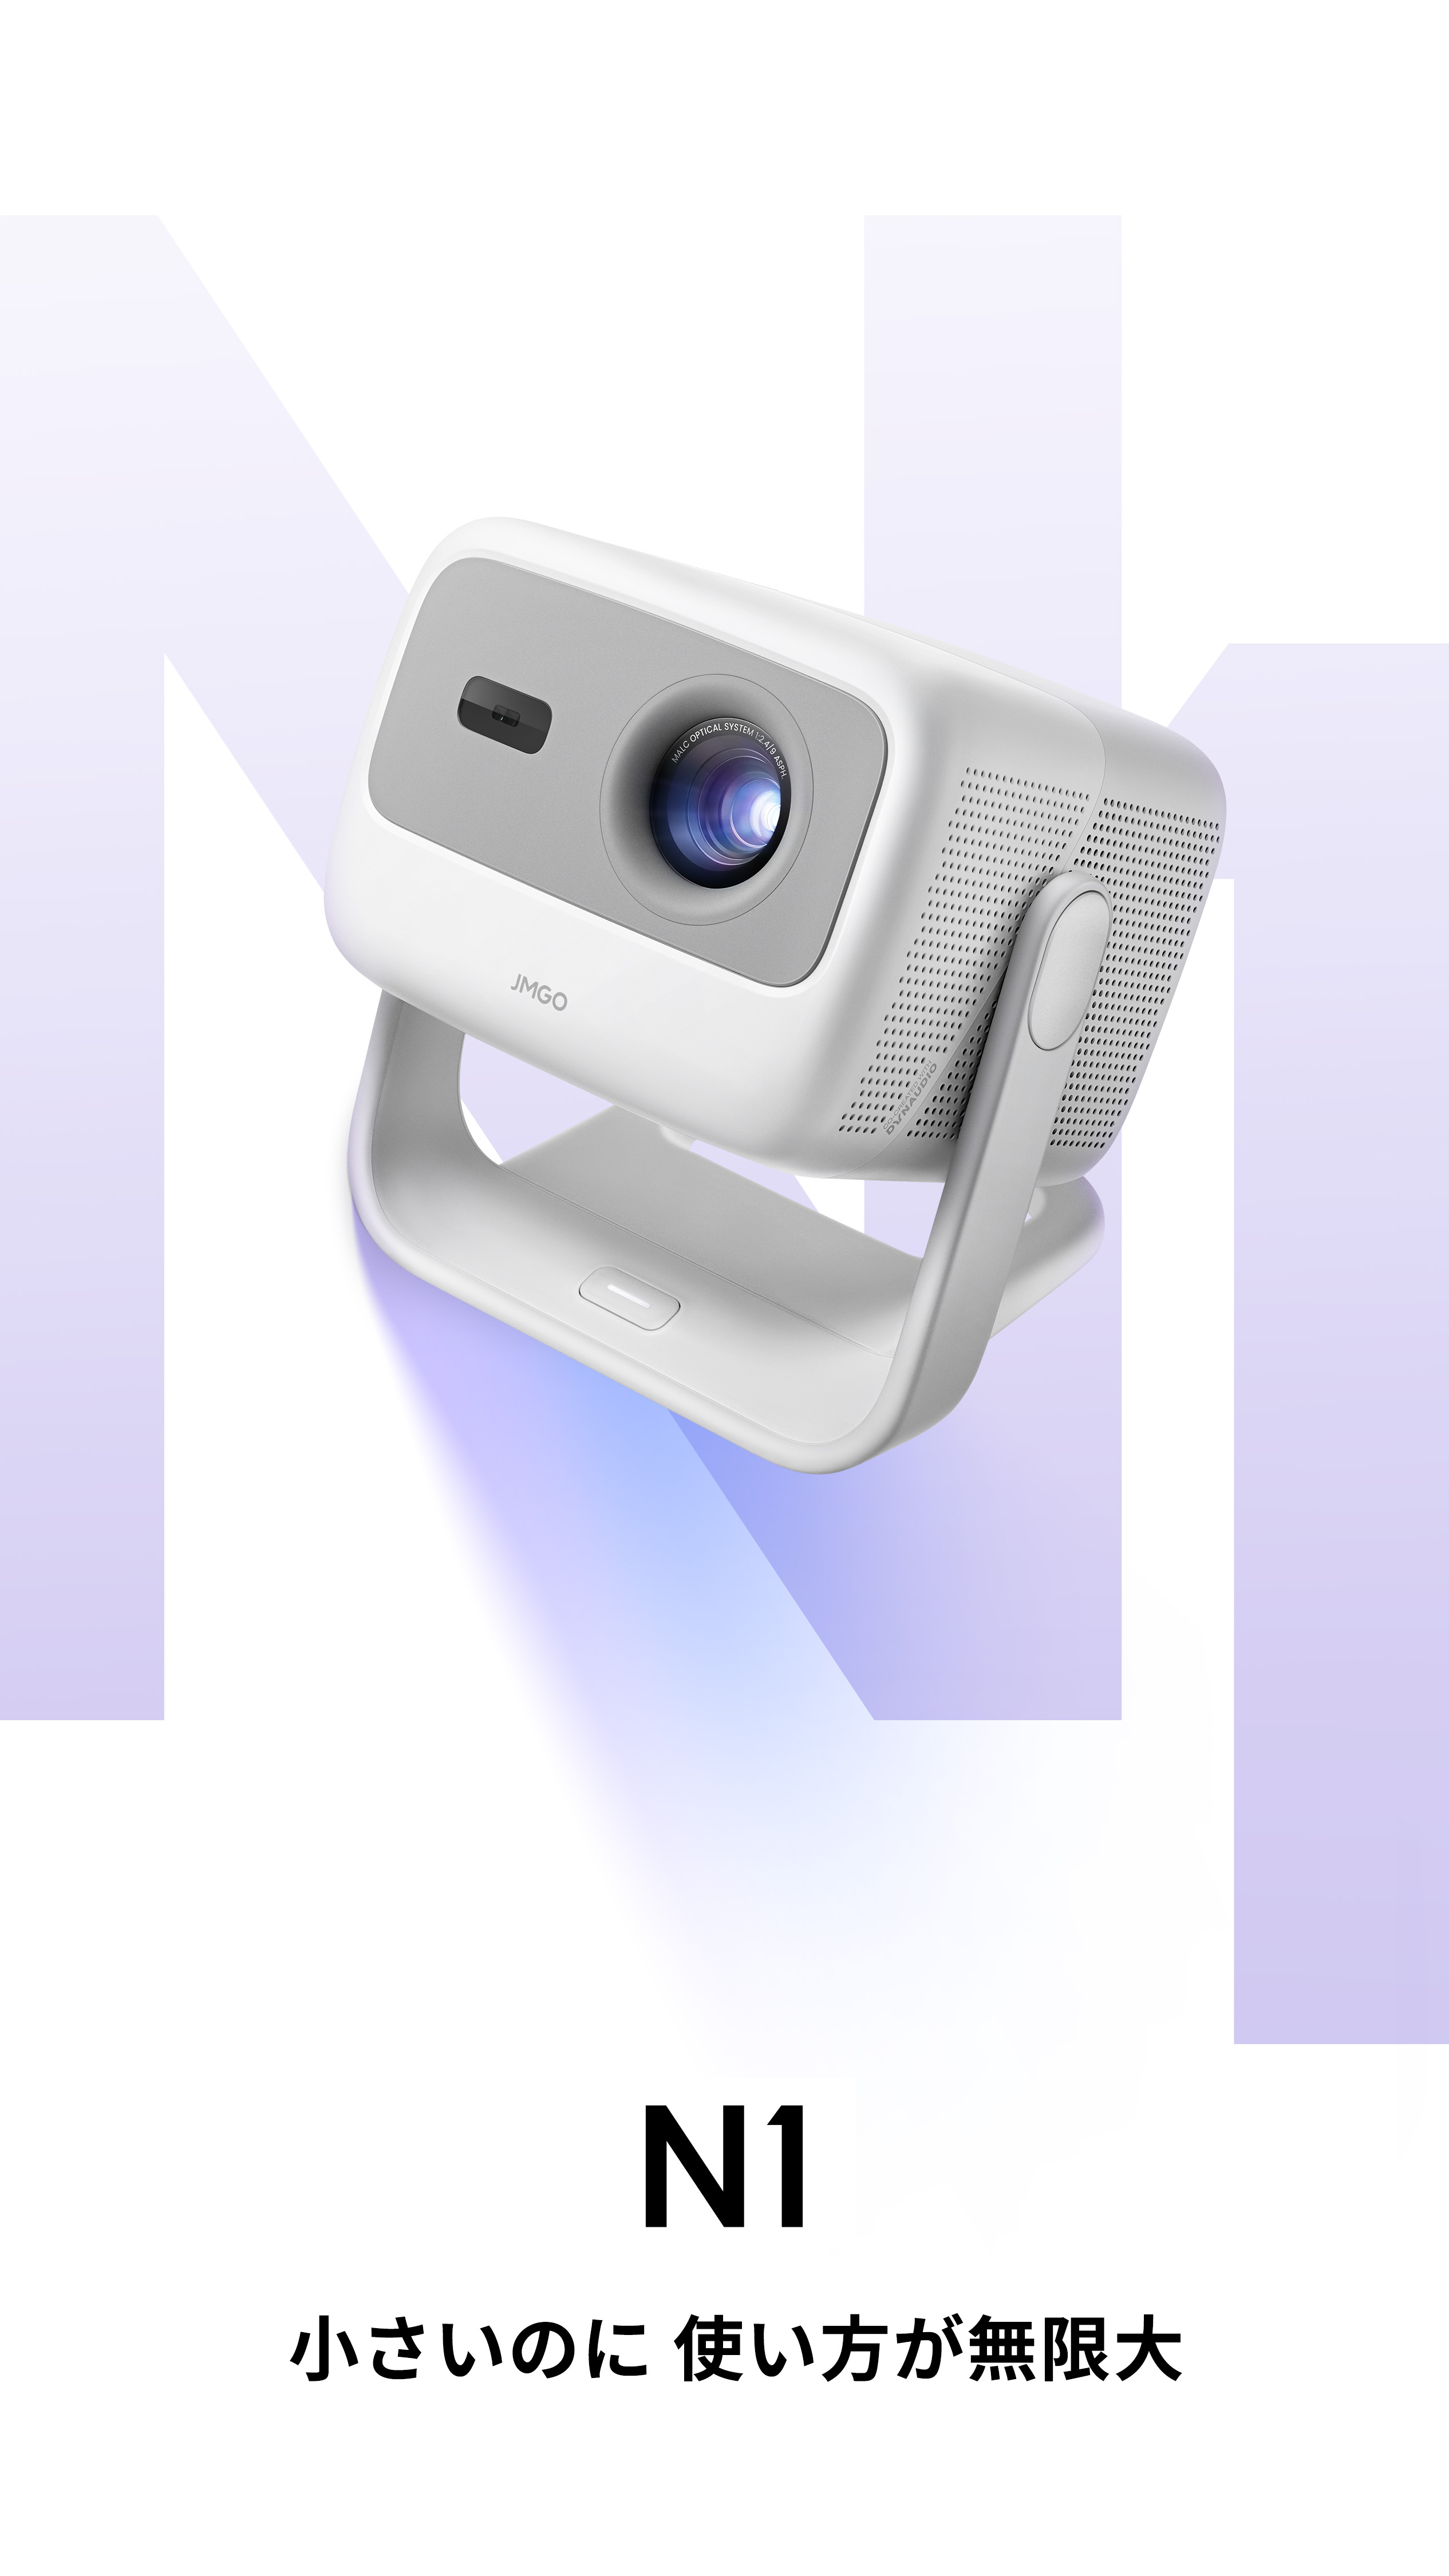 新品 JMGO N1 コンパクト明るい FHD 高画質 HDR10 3色レーザー防犯カメラ